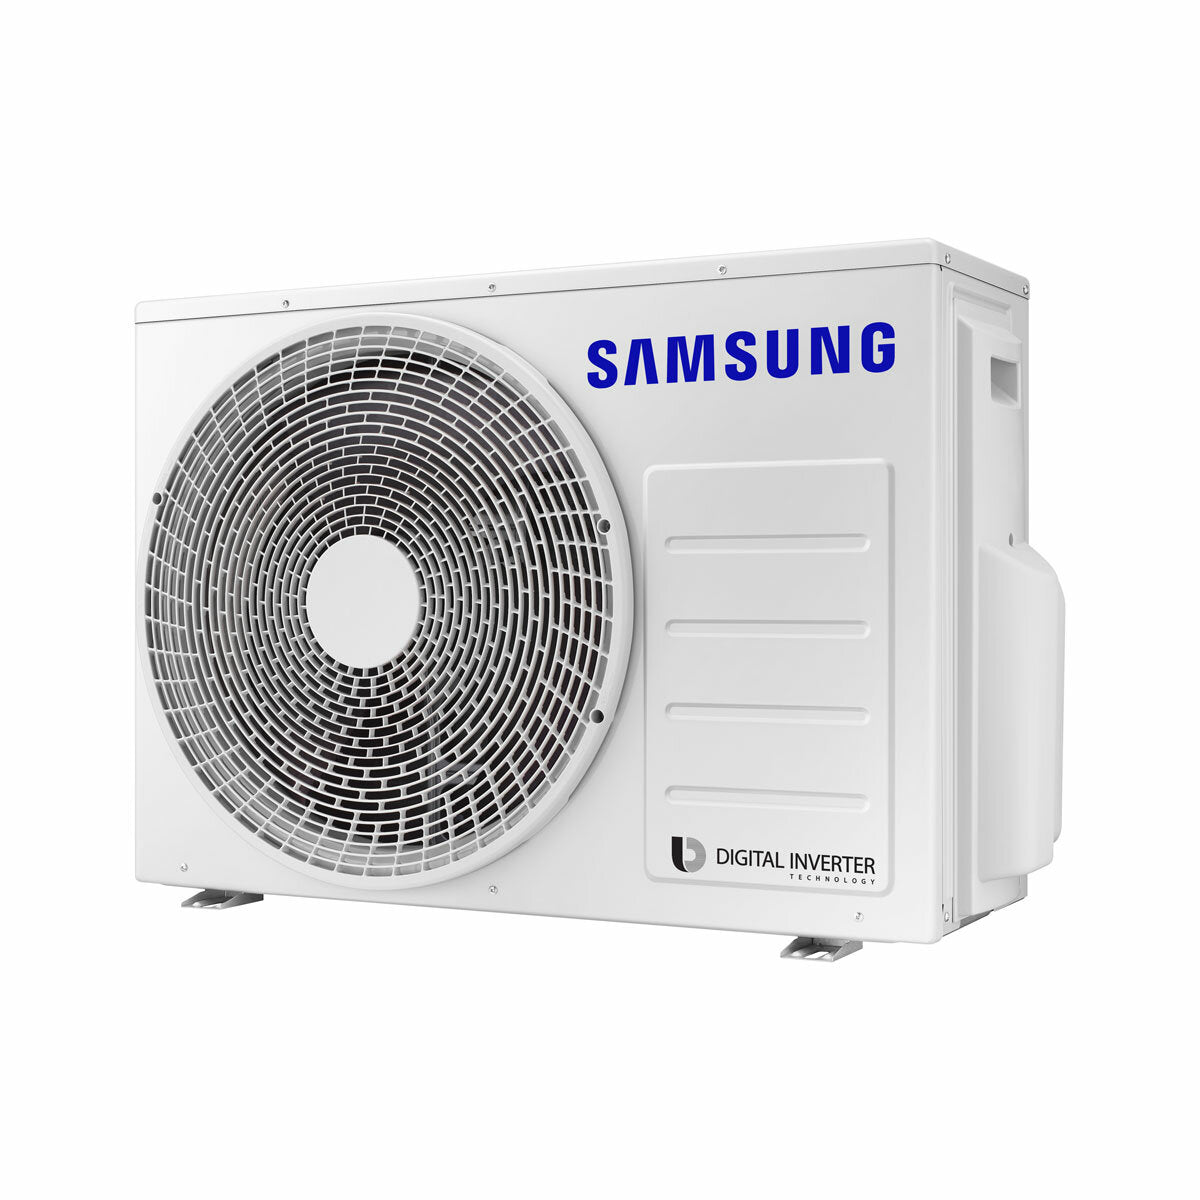 Samsung Air conditioner Windfree 4-way trial split 7000 + 9000 + 12000 BTU inverter A +++ outdoor unit 5.2 kW